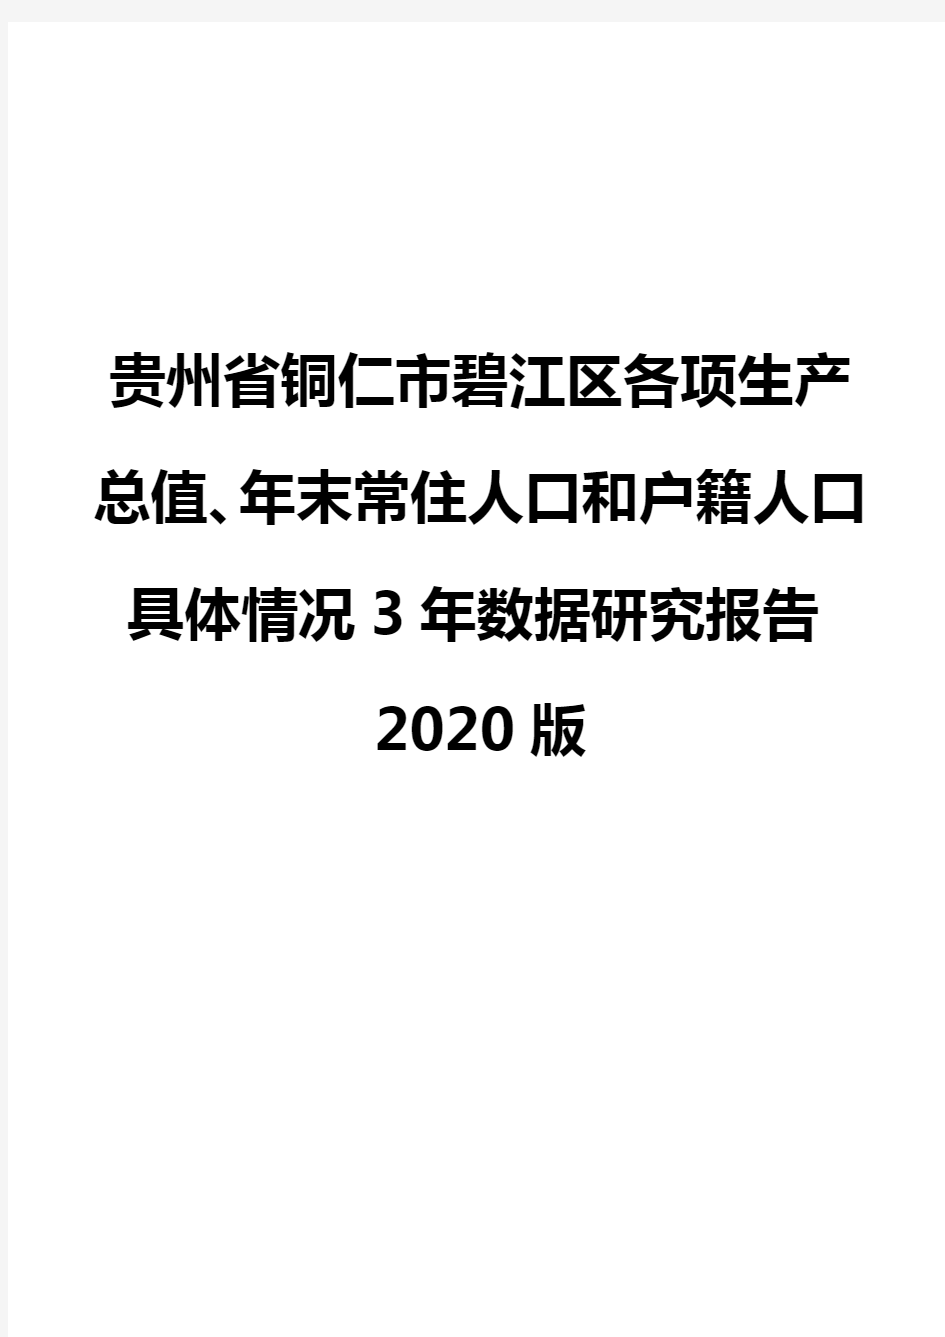 贵州省铜仁市碧江区各项生产总值、年末常住人口和户籍人口具体情况3年数据研究报告2020版